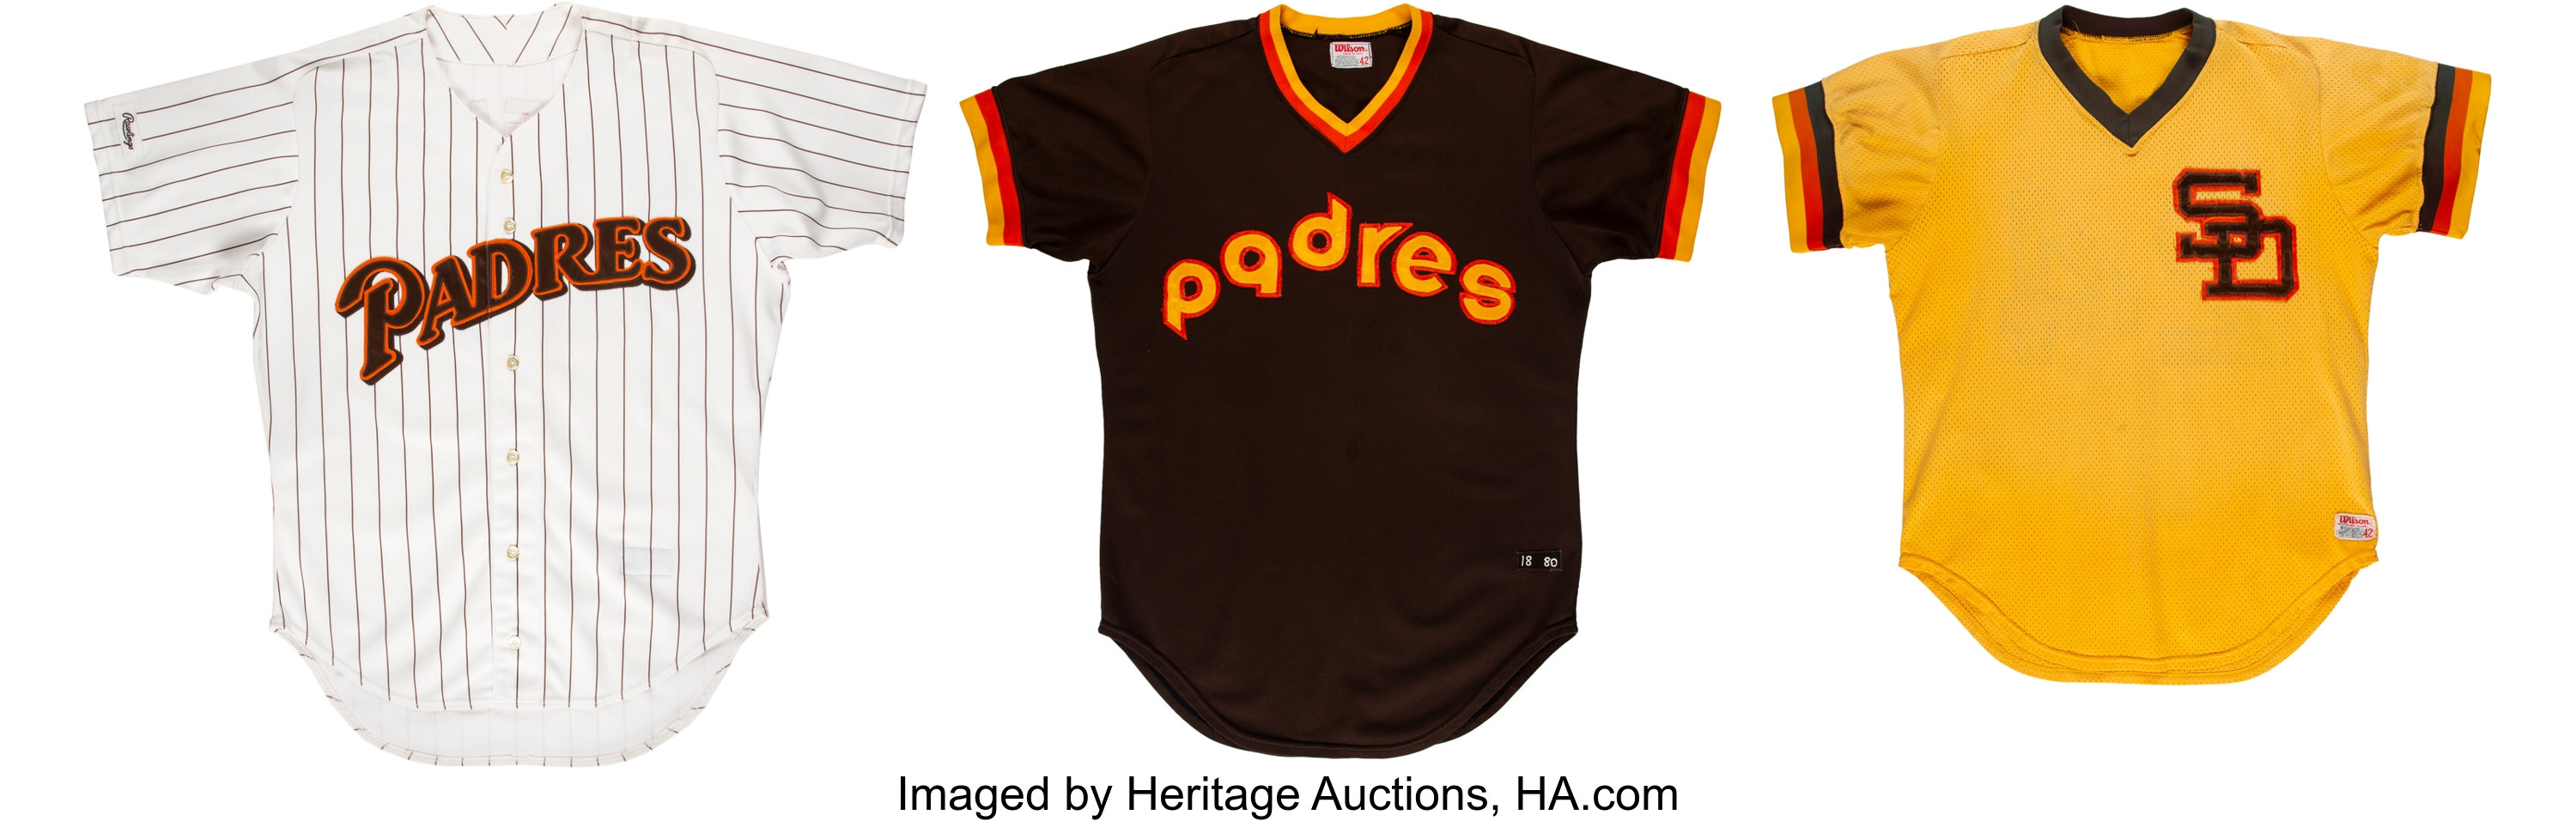 Padres uniform history: The 1980s  San diego padres baseball, San